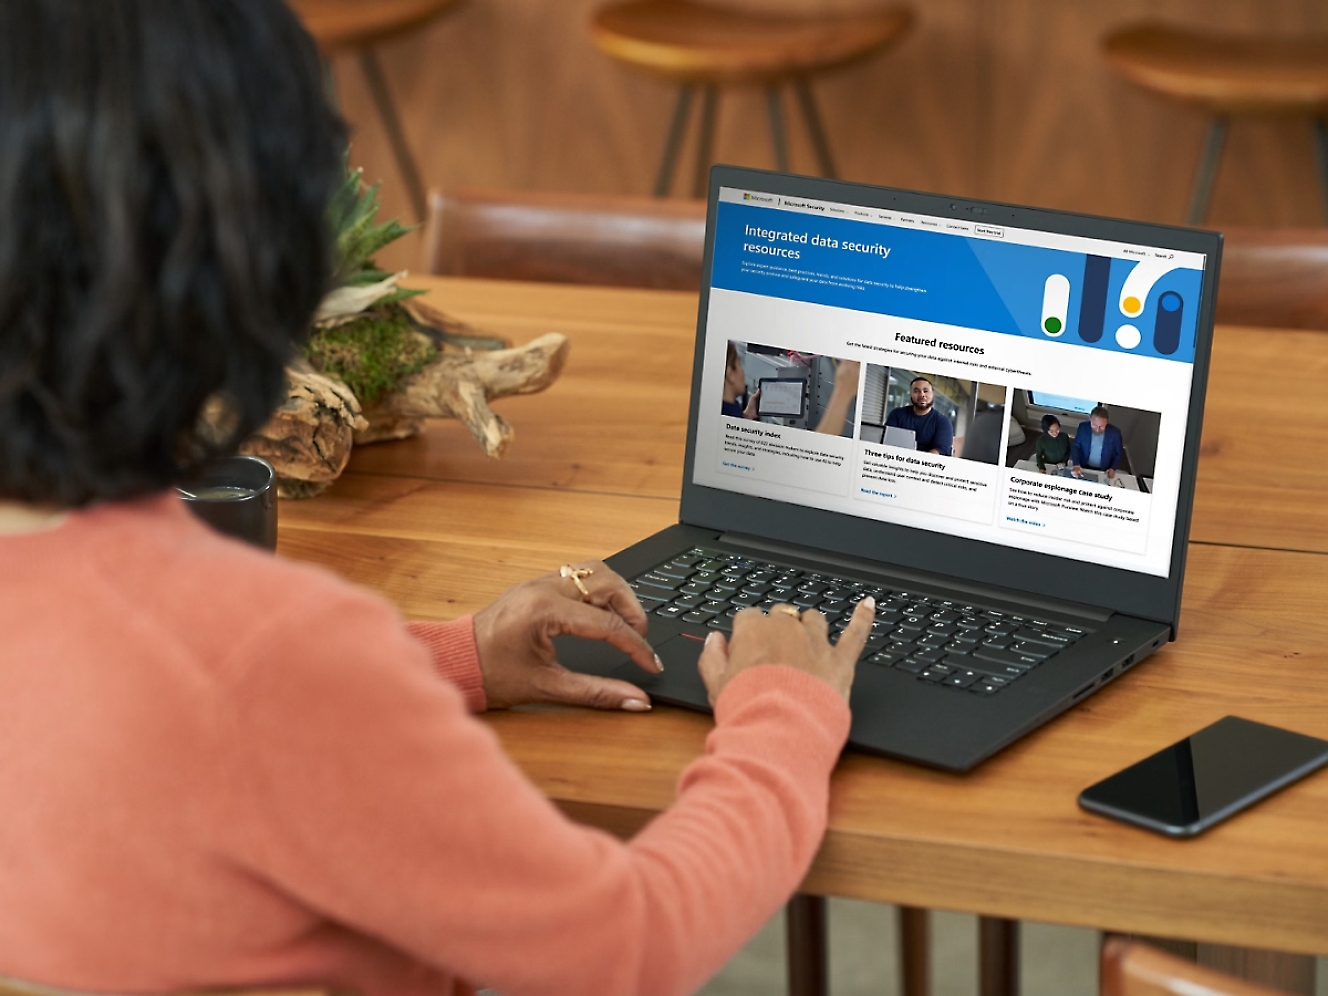 Femme en pull orange assise à une table en bois, regardant sur un ordinateur portable un site web sur la sécurité des données